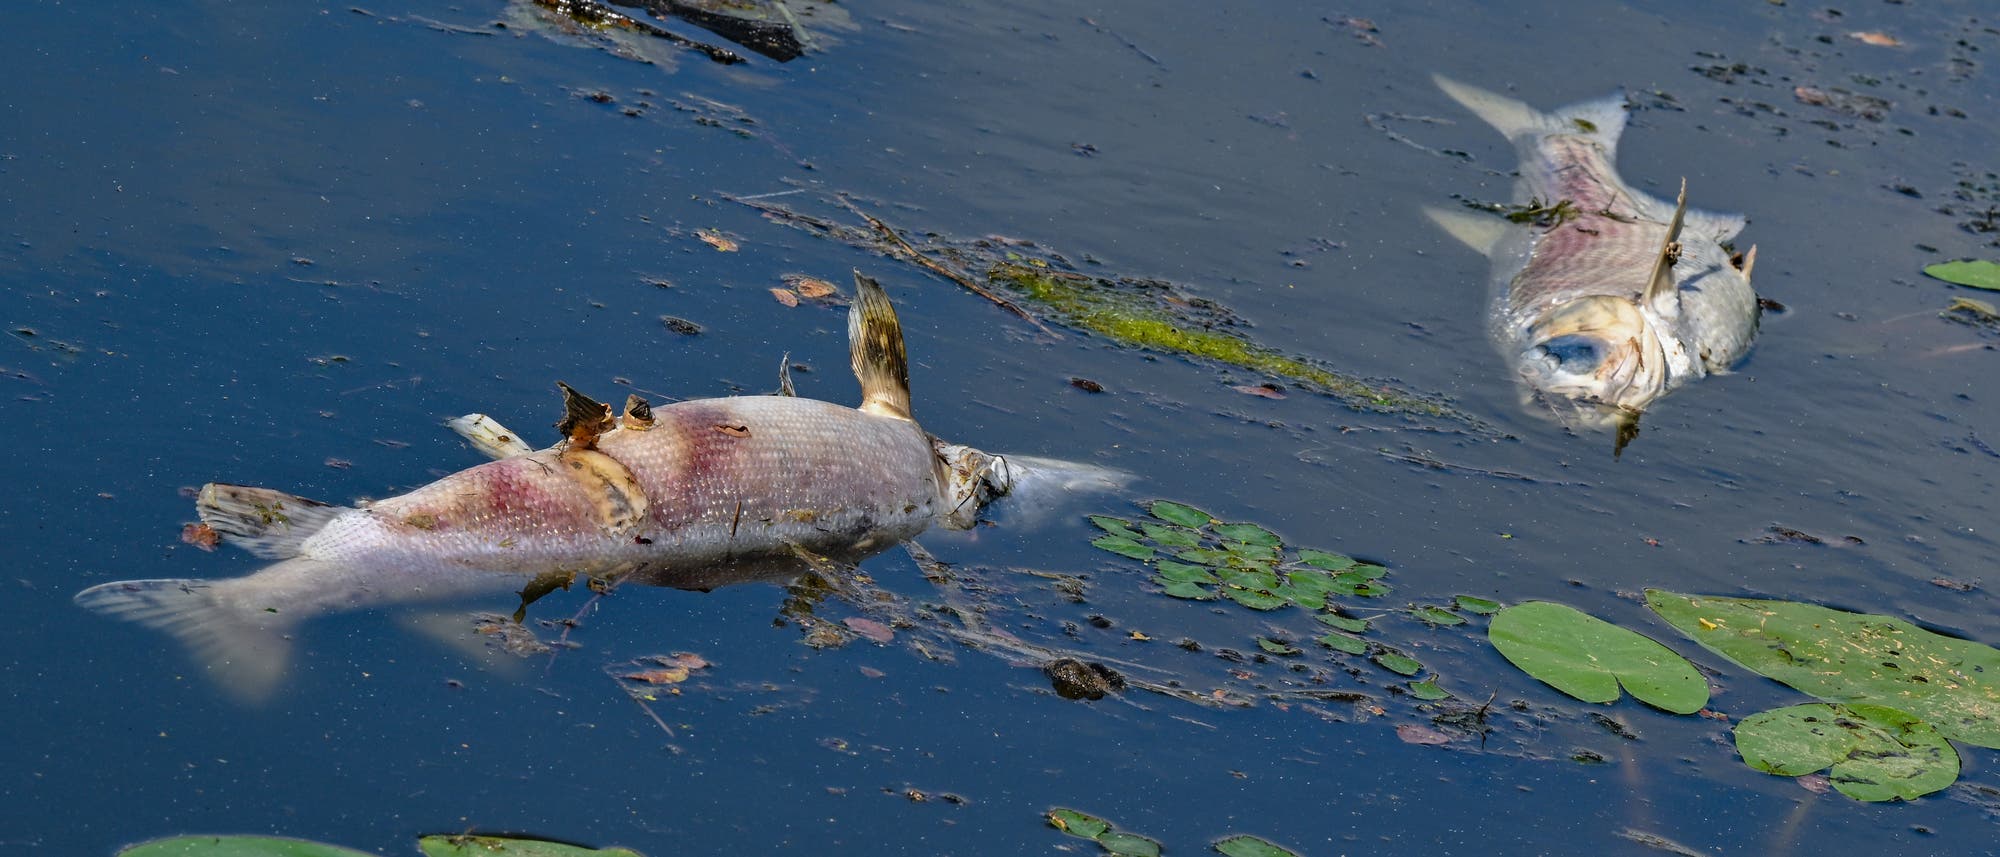 Zwei große tote, rot-silbrige Fische von etwa 50 Zentimetern Länge treiben an der Wasseroberfläche im Winterhafen, einem Nebenarm des deutsch-polnischen Grenzflusses Oder. Einige grüne Schwimmblattgewächse sind ebenfalls vorhanden.